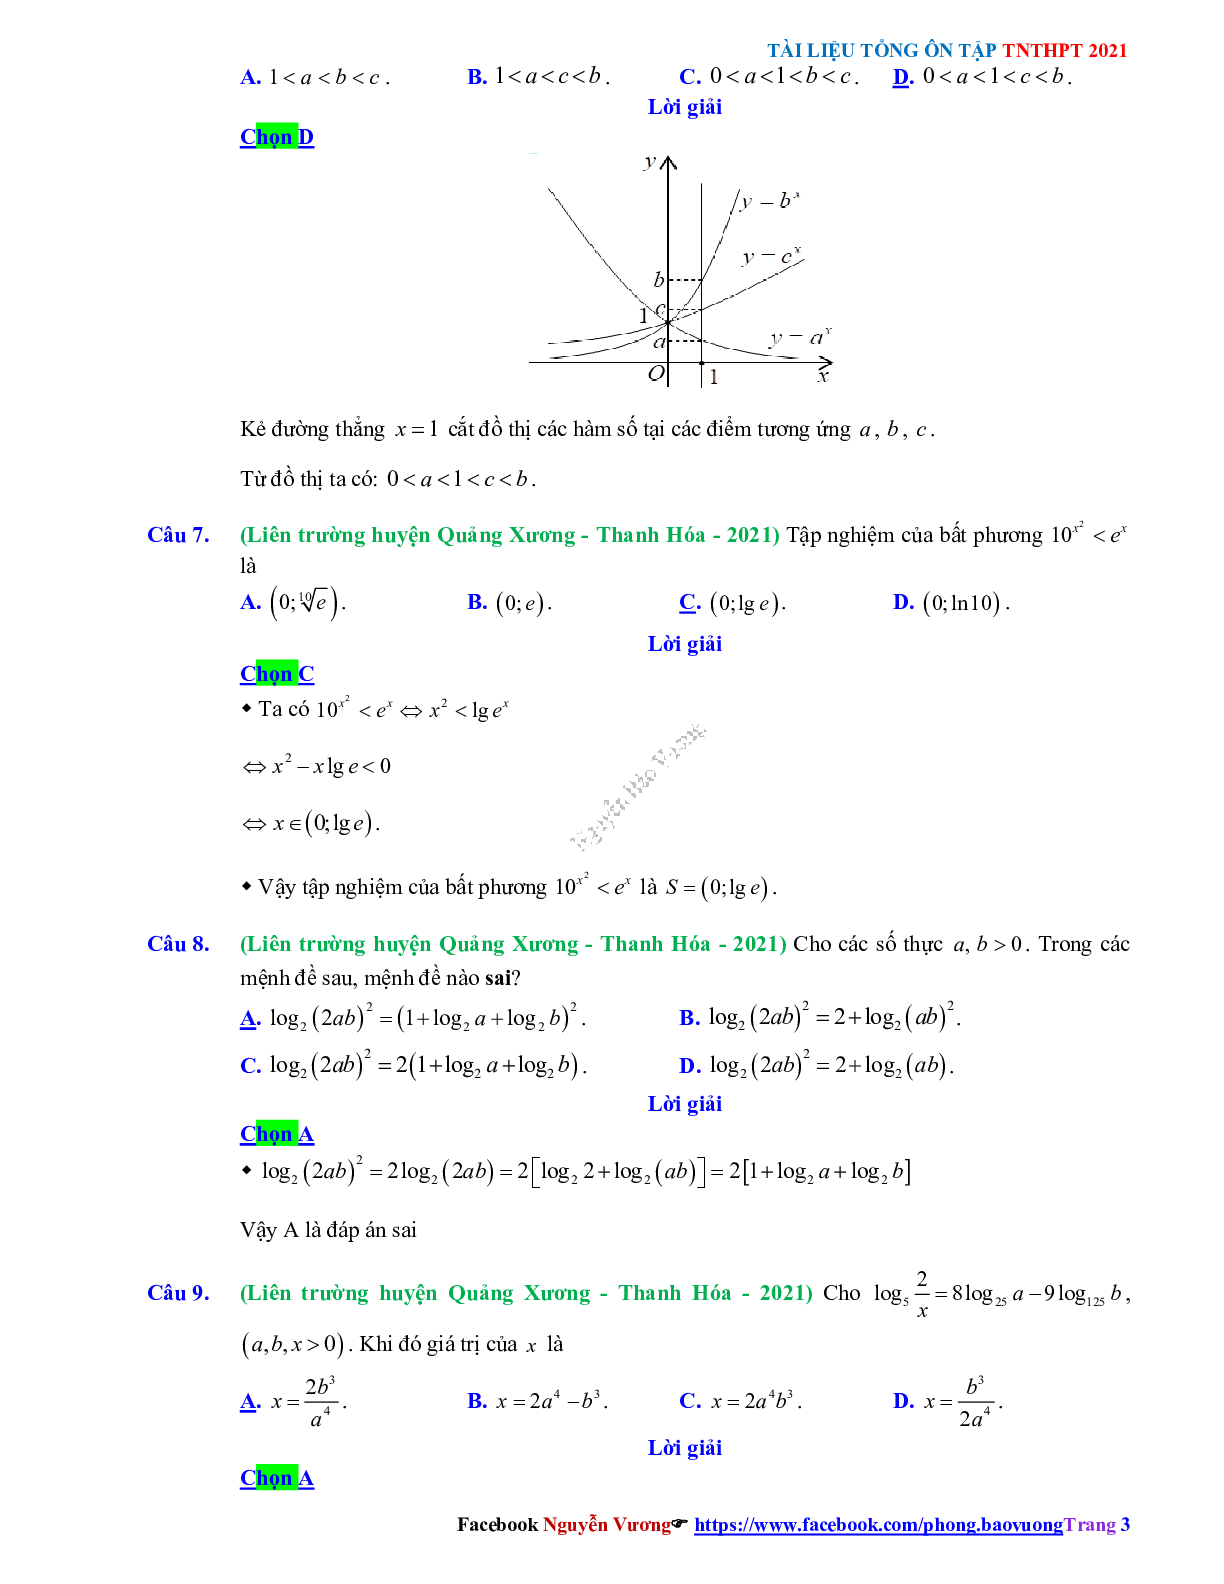 Trắc nghiệm Ôn thi THPT QG Toán 12: Đáp án mũ - lũy thừa - logarit mức độ thông hiểu (trang 3)